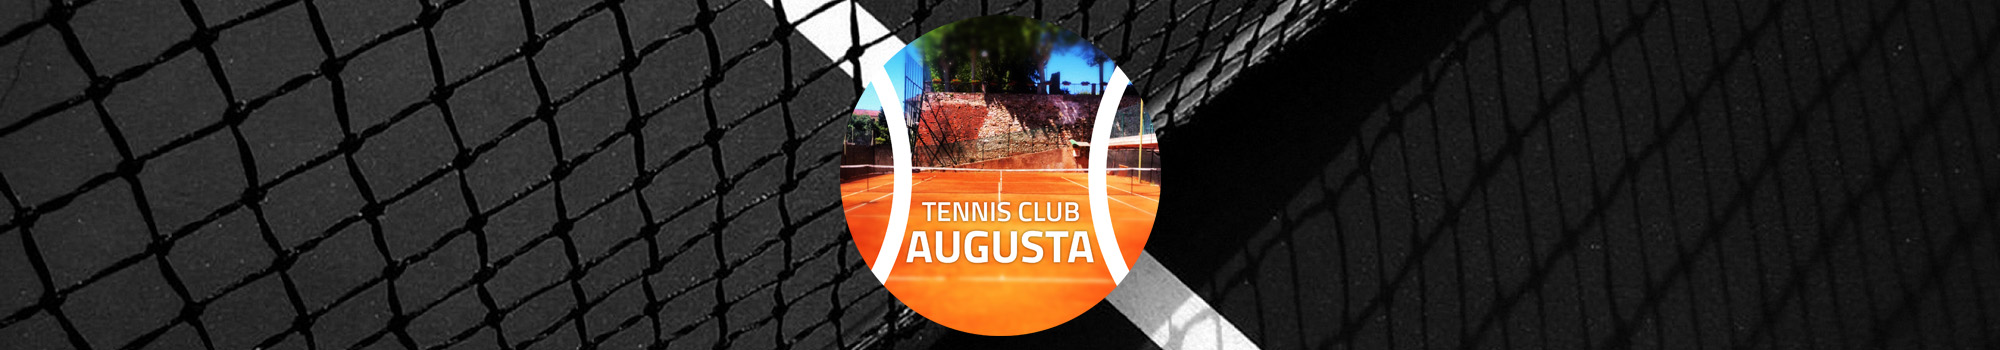 Tennis Club Augusta